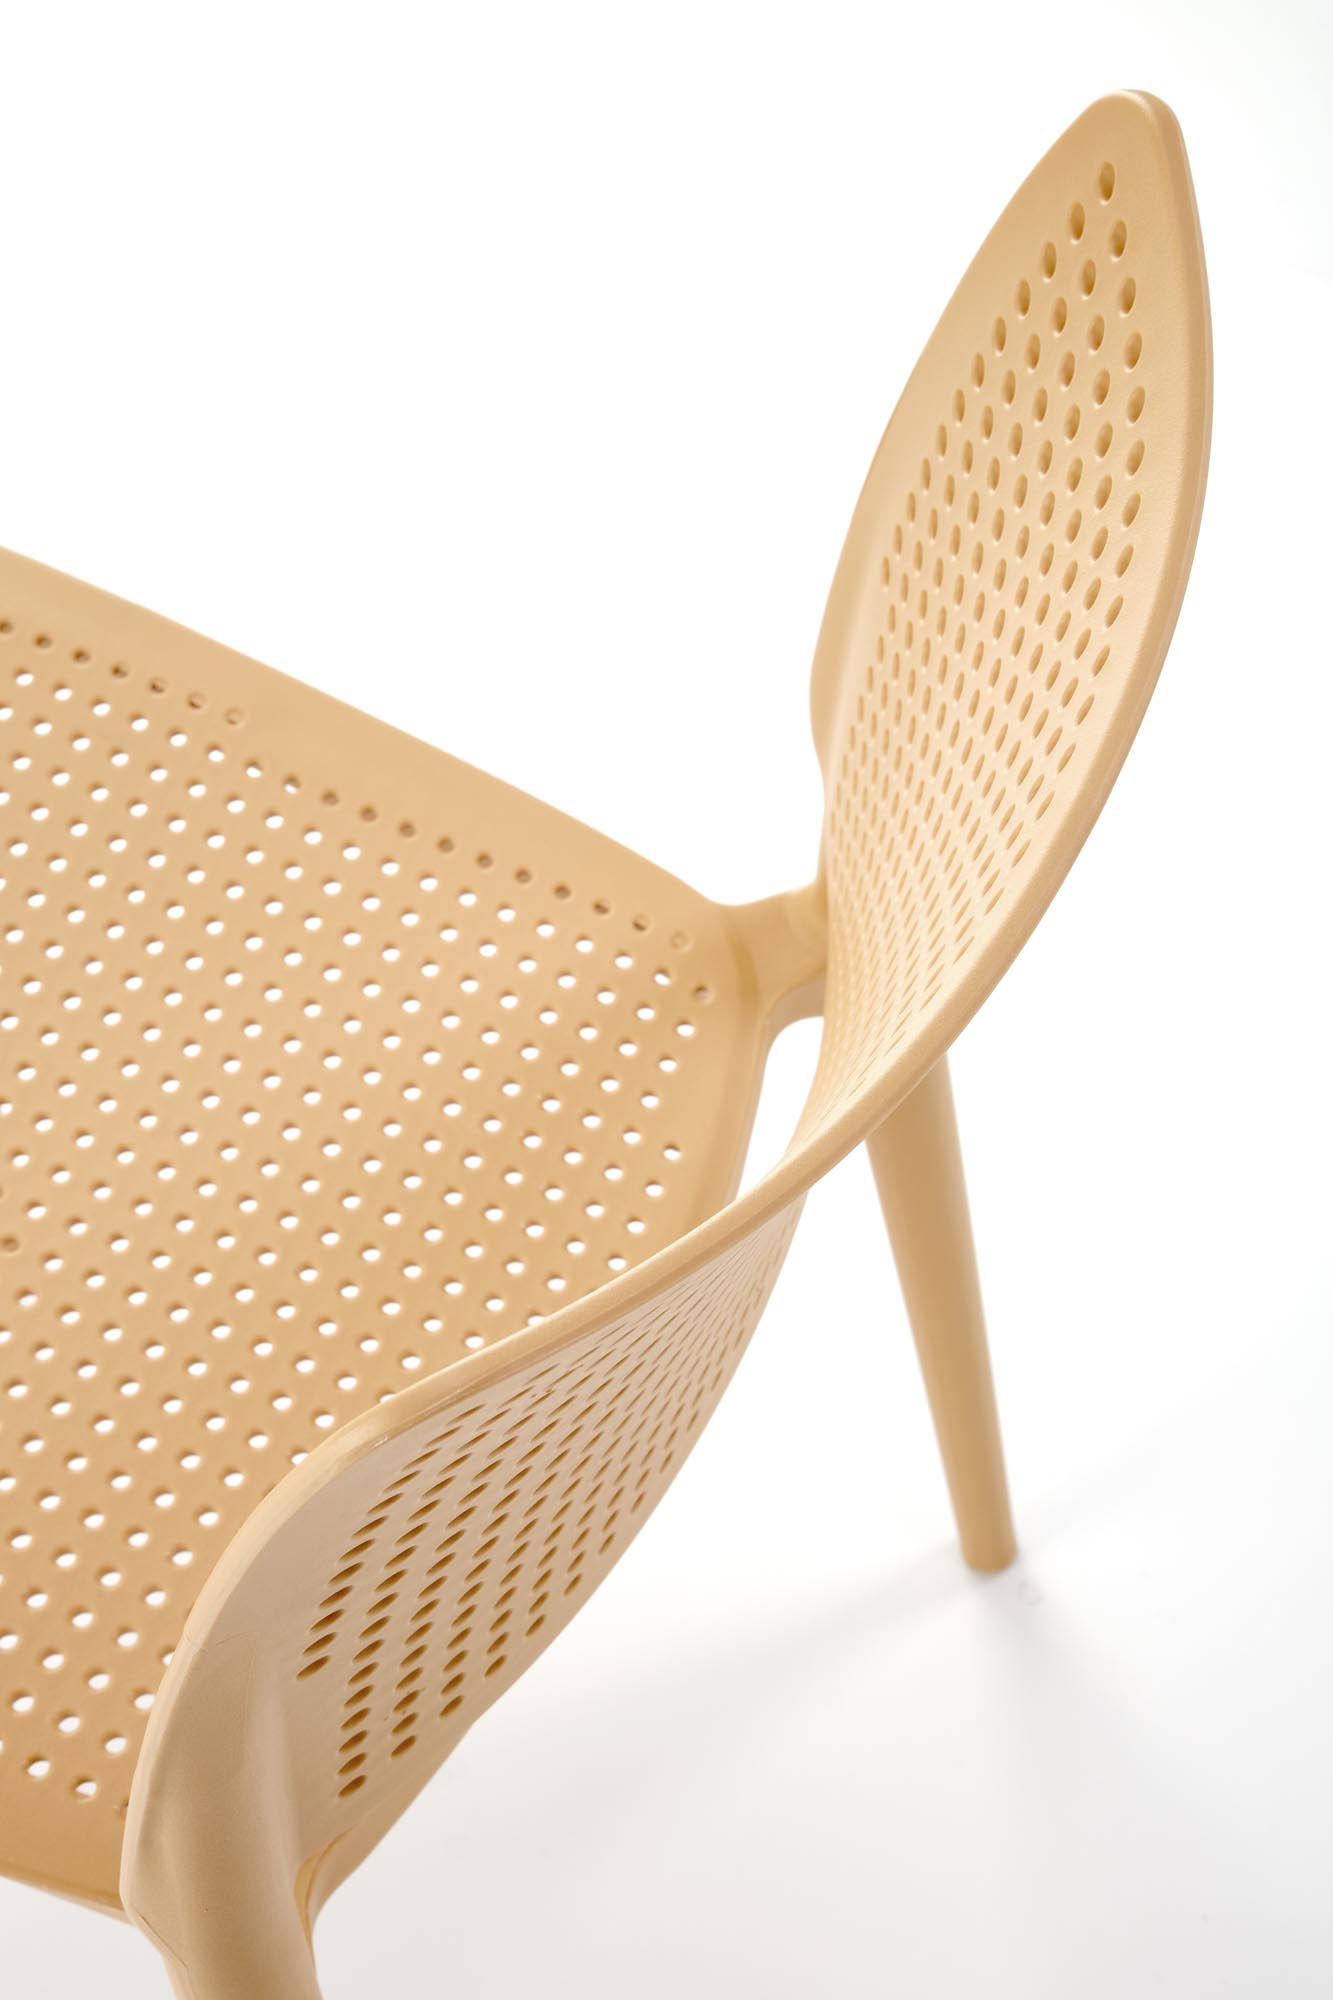 K514 Židle Oranžový (1p=4szt) Židle z tworzywa k514 - Oranžový